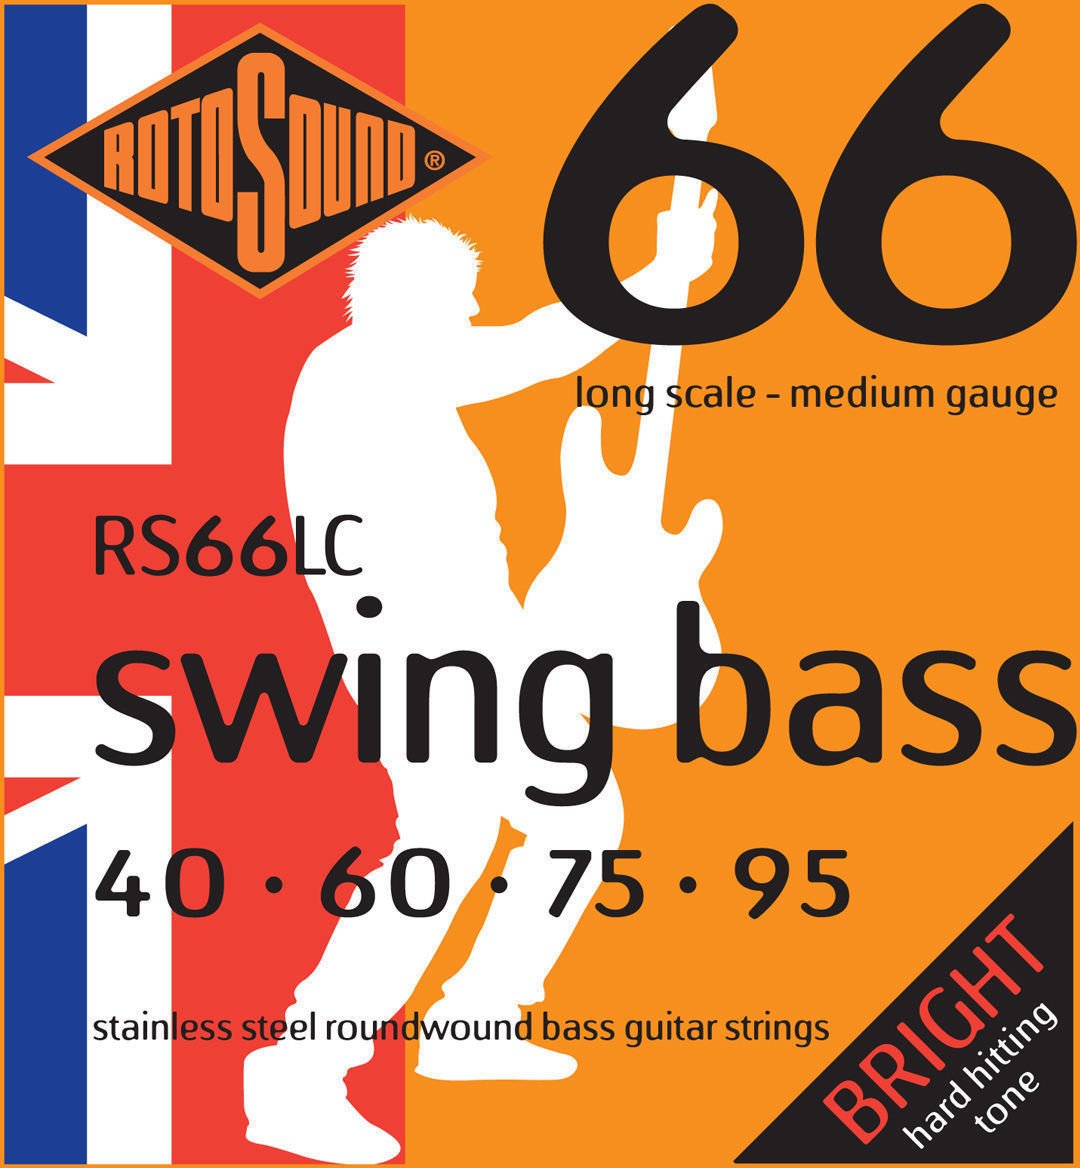 Struny pre basgitaru Rotosound RS66LC